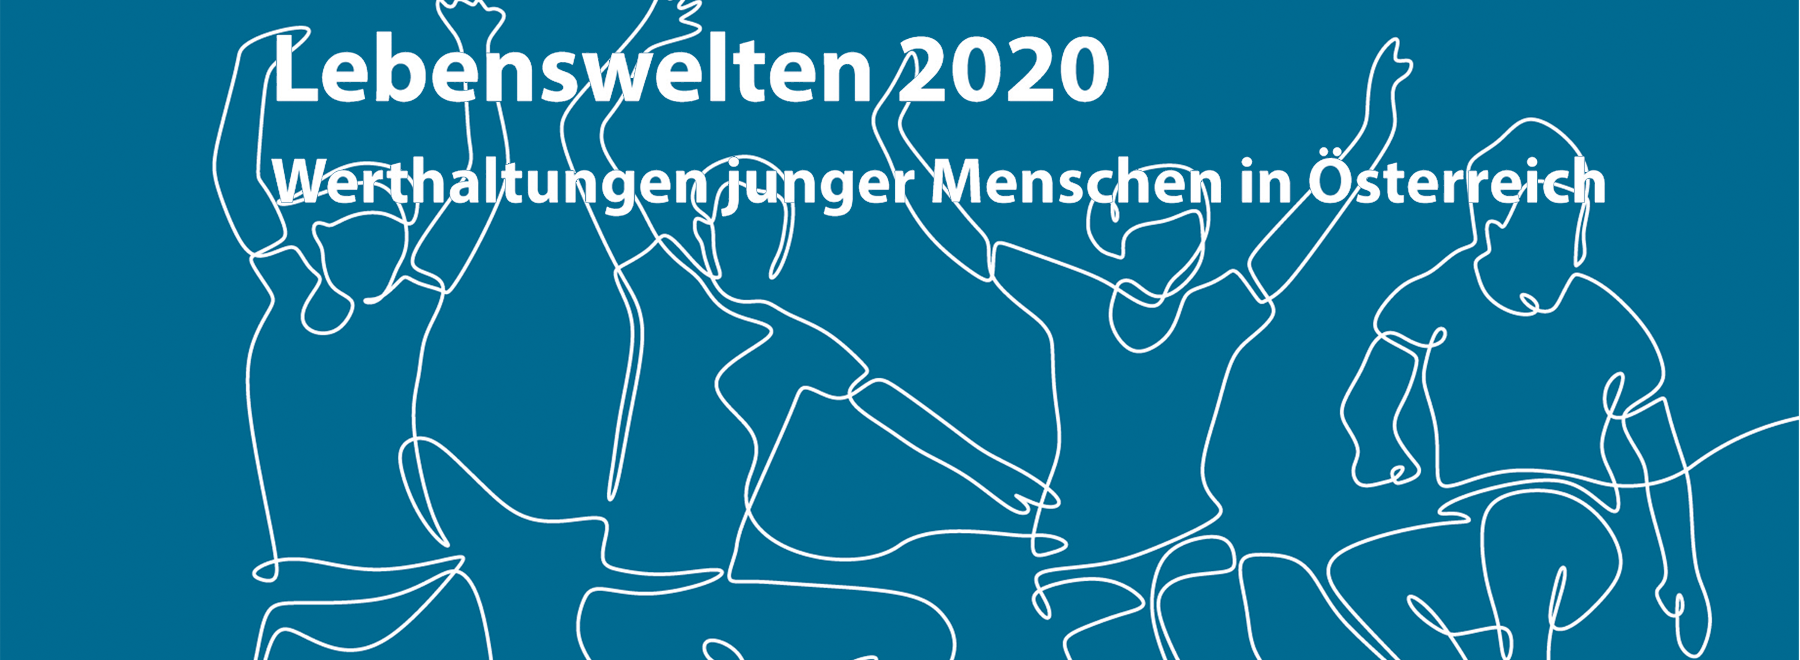 Jugendstudie Lebenswelten 2020 - Werthaltungen junger Menschen in Österreich